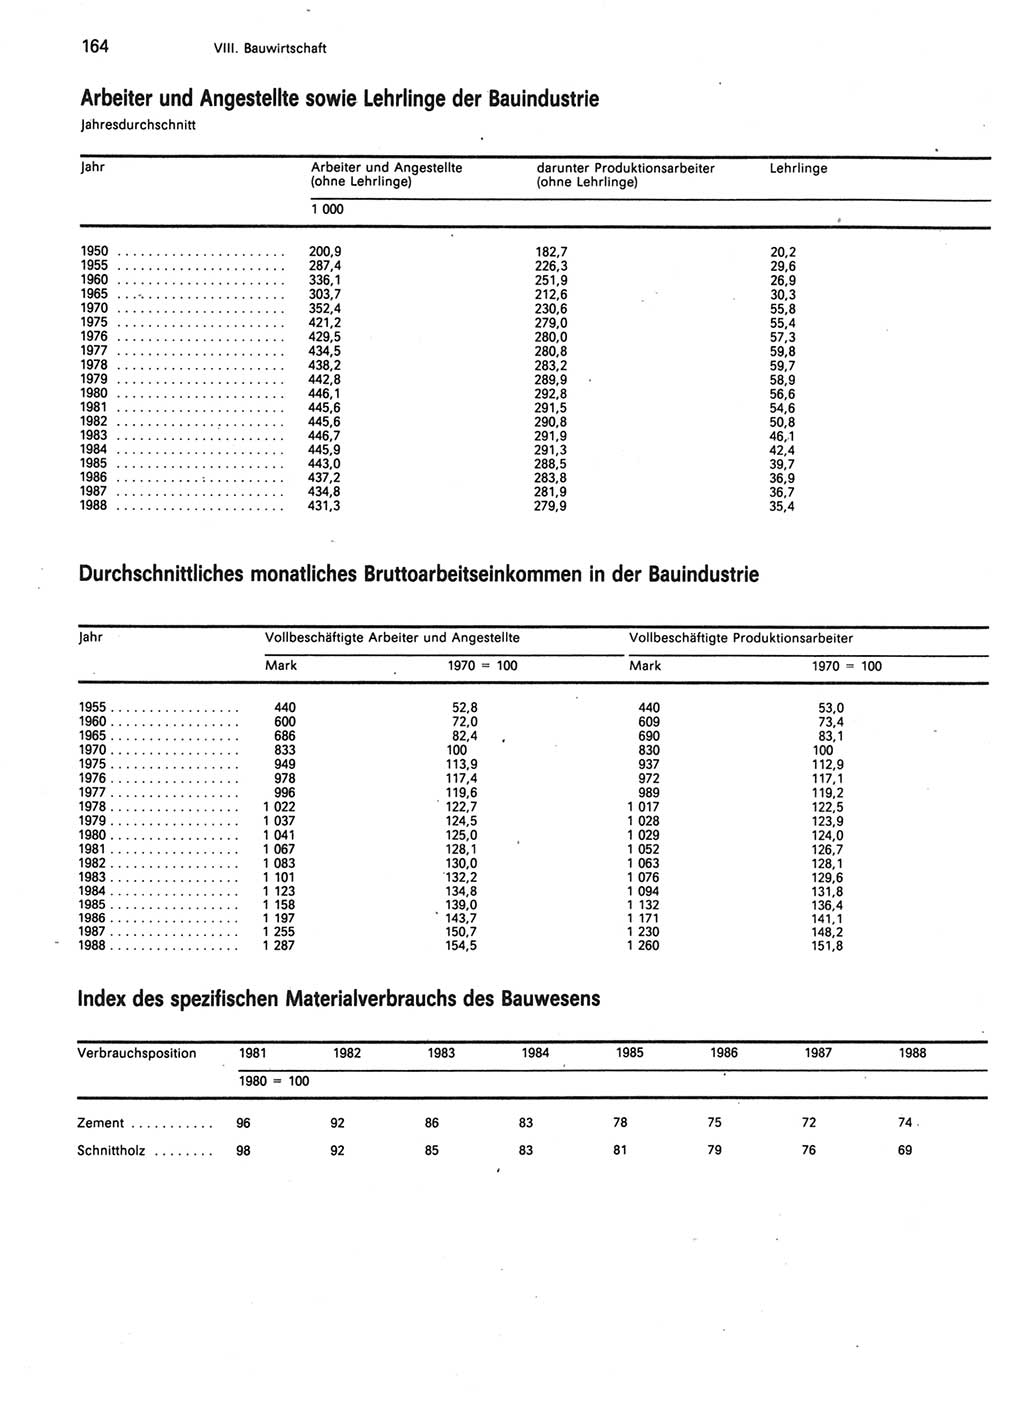 Statistisches Jahrbuch der Deutschen Demokratischen Republik (DDR) 1989, Seite 164 (Stat. Jb. DDR 1989, S. 164)